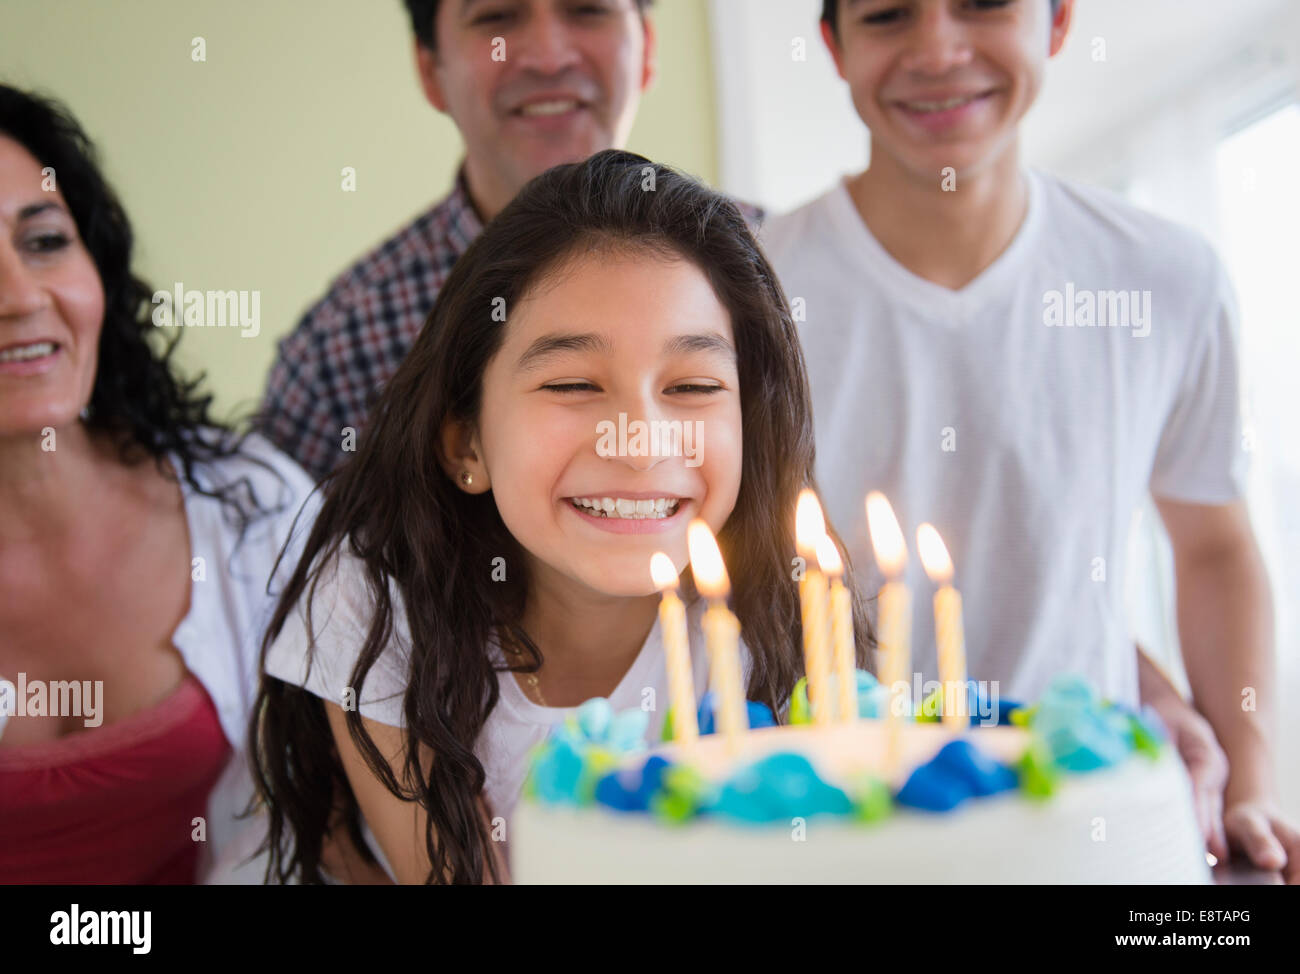 Hispanic girl admiring birthday cake Stock Photo